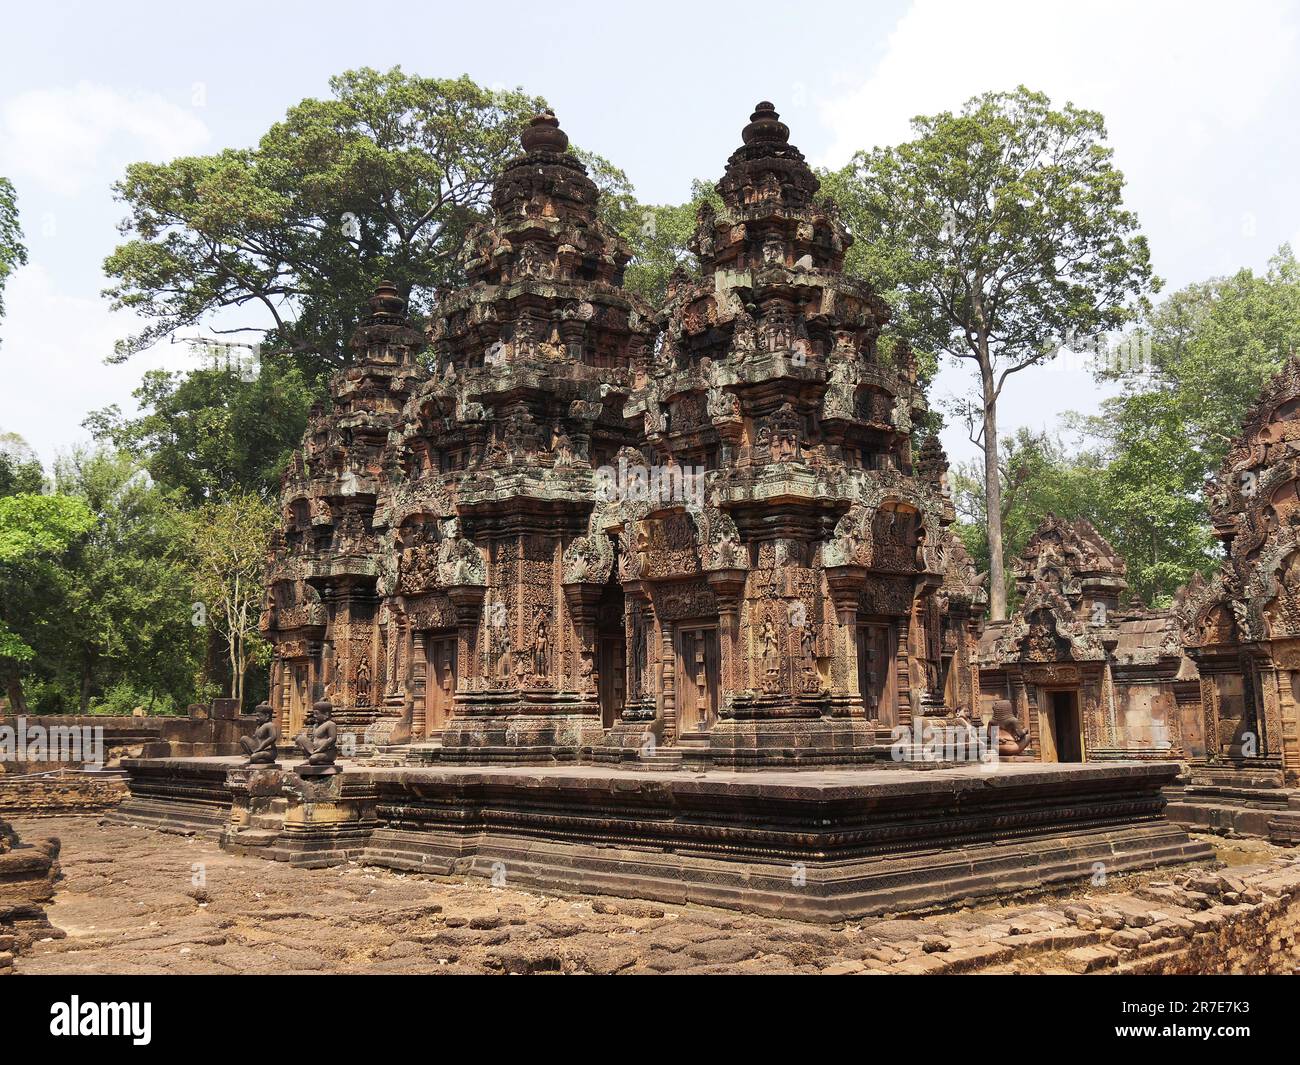 Tempio di Banteay Srei, provincia di Siem Reap, complesso del tempio di Angkor, patrimonio mondiale dell'UNESCO nel 1192, costruito nel 967 dal re Jayavarman V, C. Foto Stock